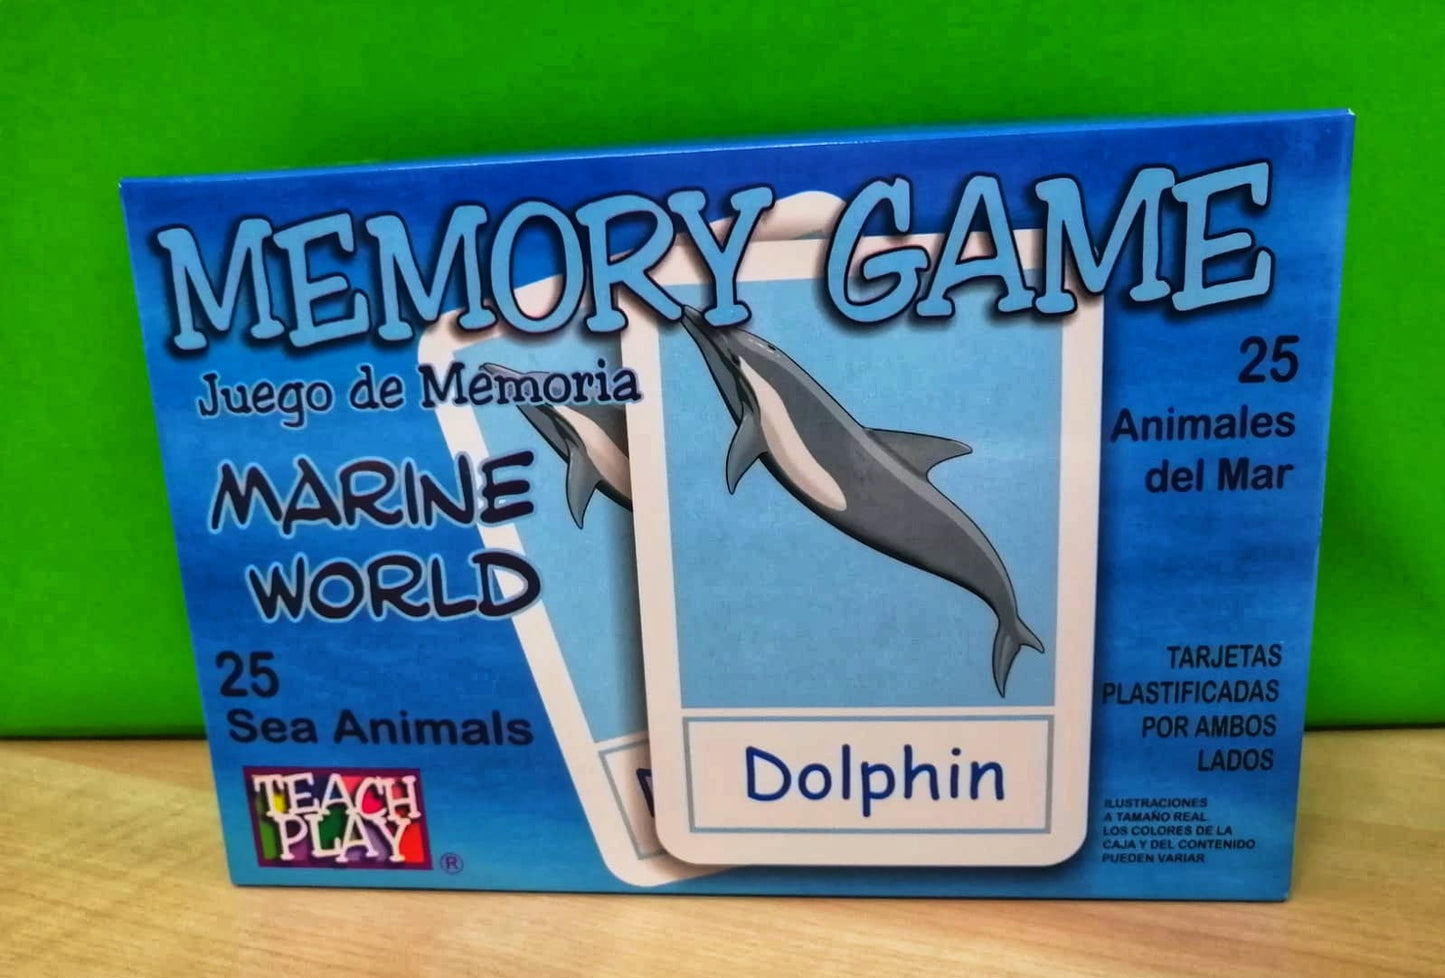 MEMORY GAME MARINE WORLD